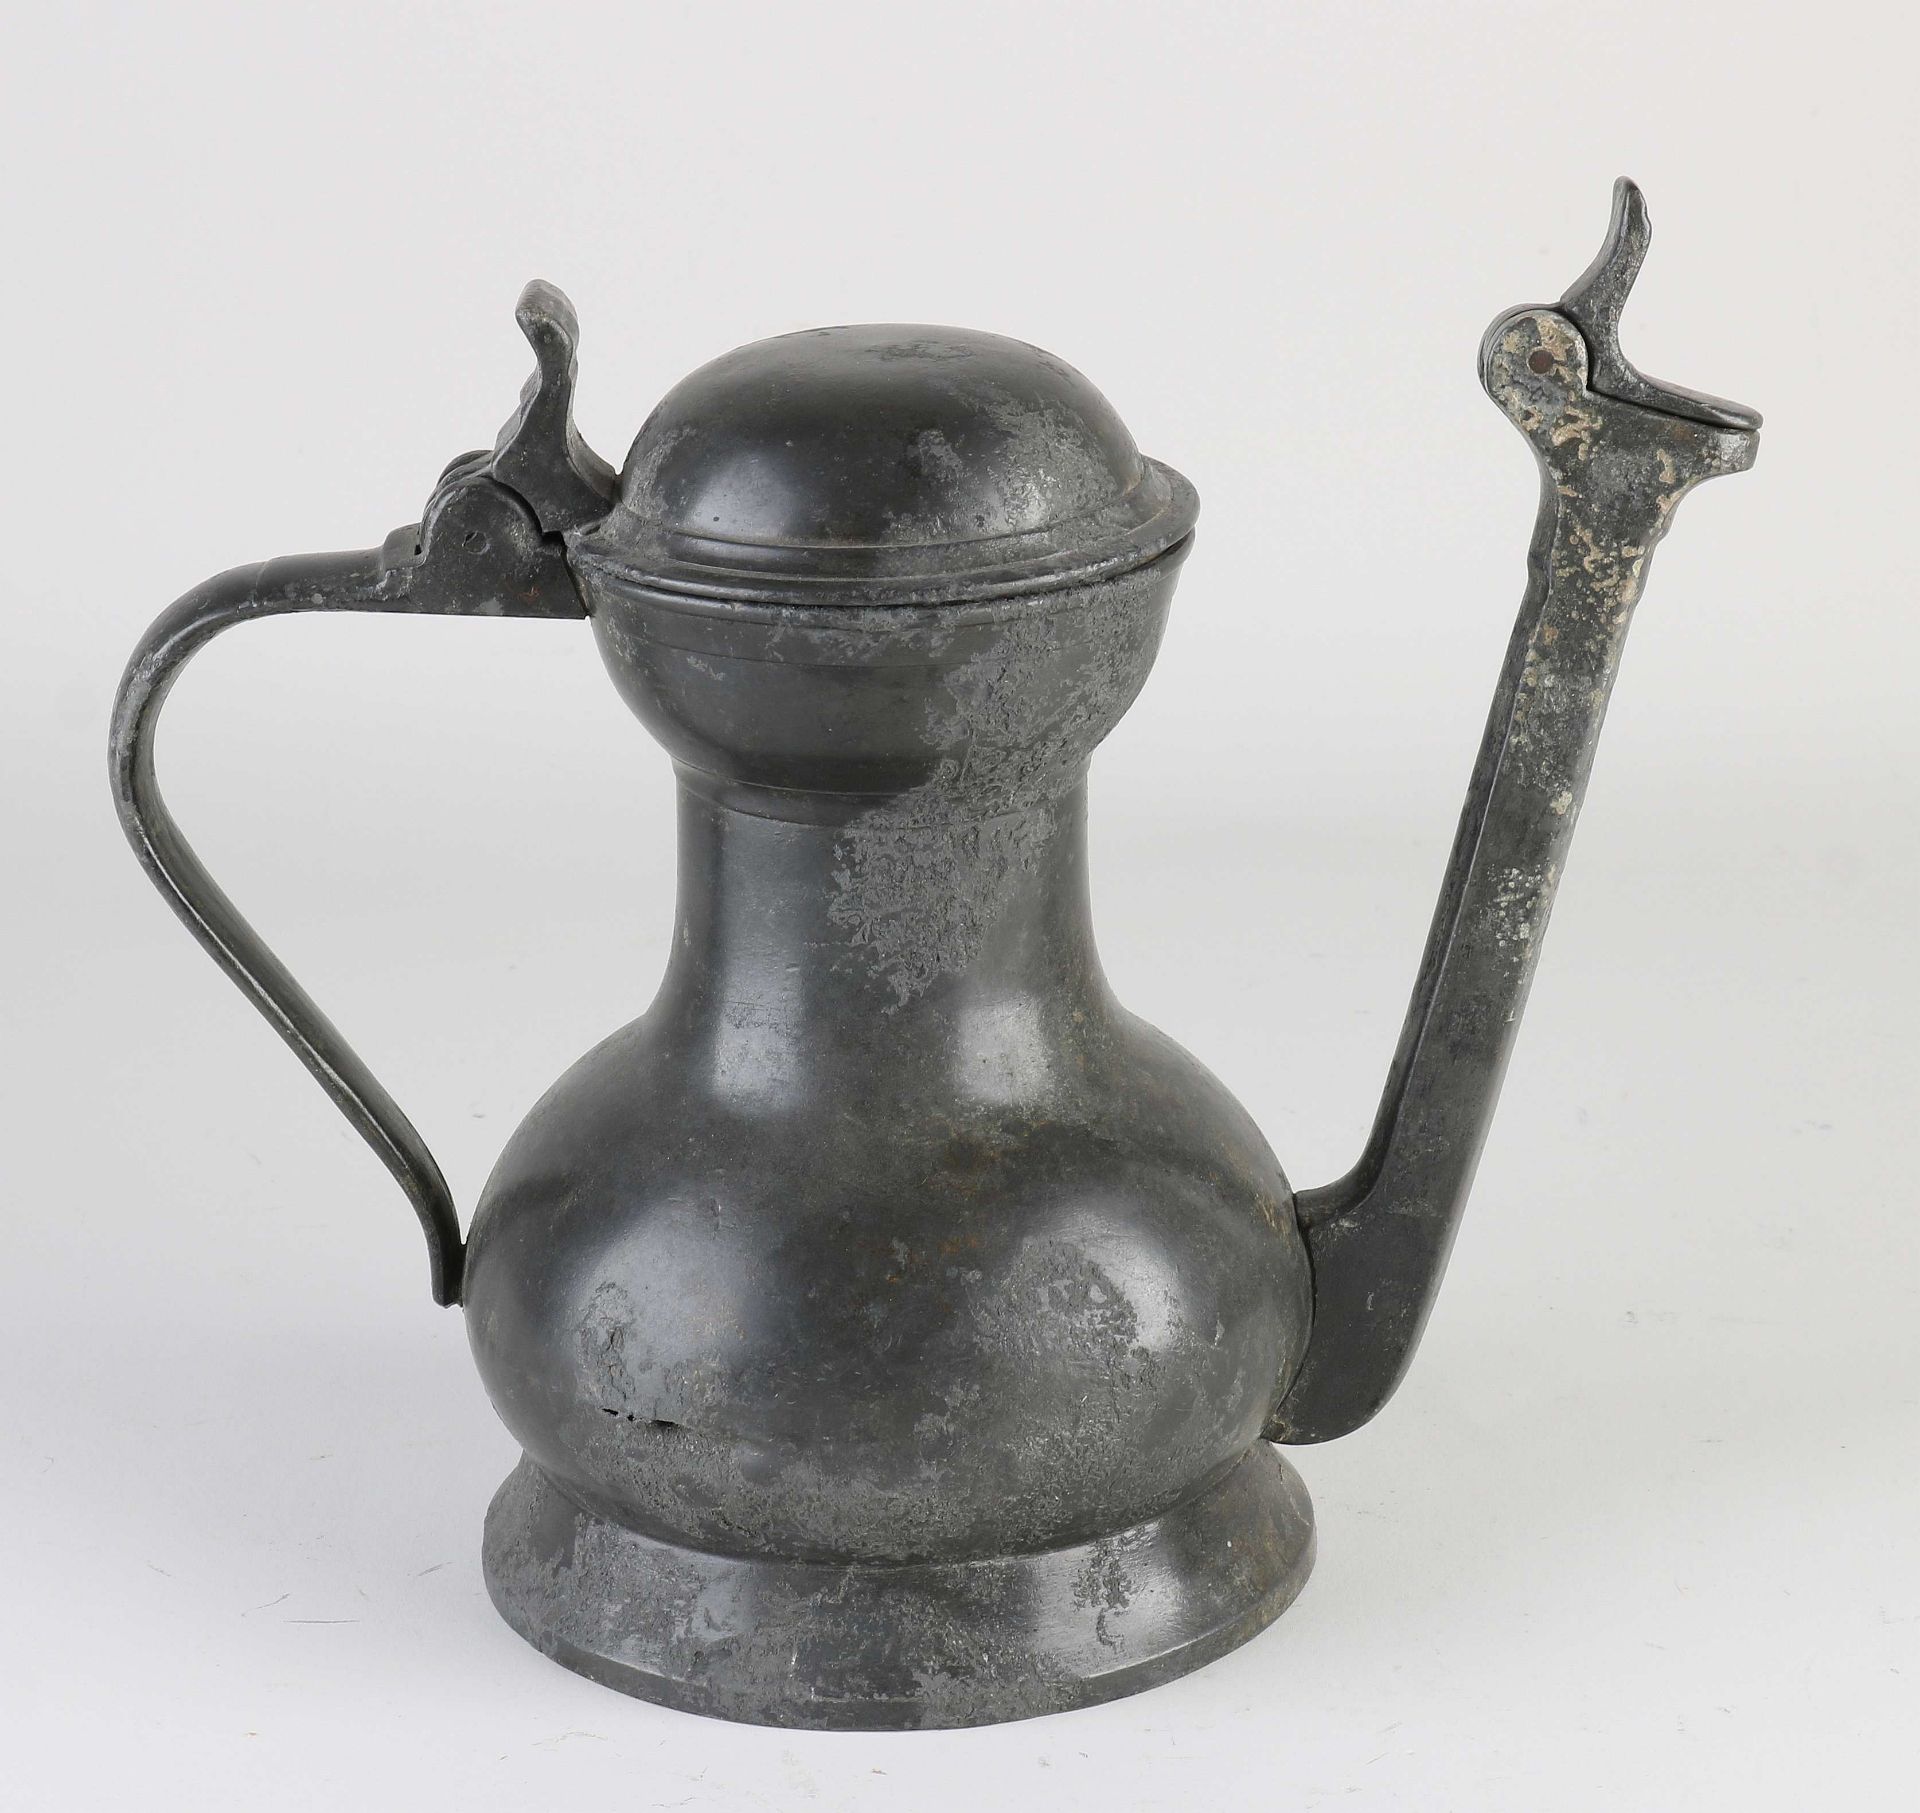 Antique pewter Jan Steen jug, H 19.5 cm. - Image 2 of 2